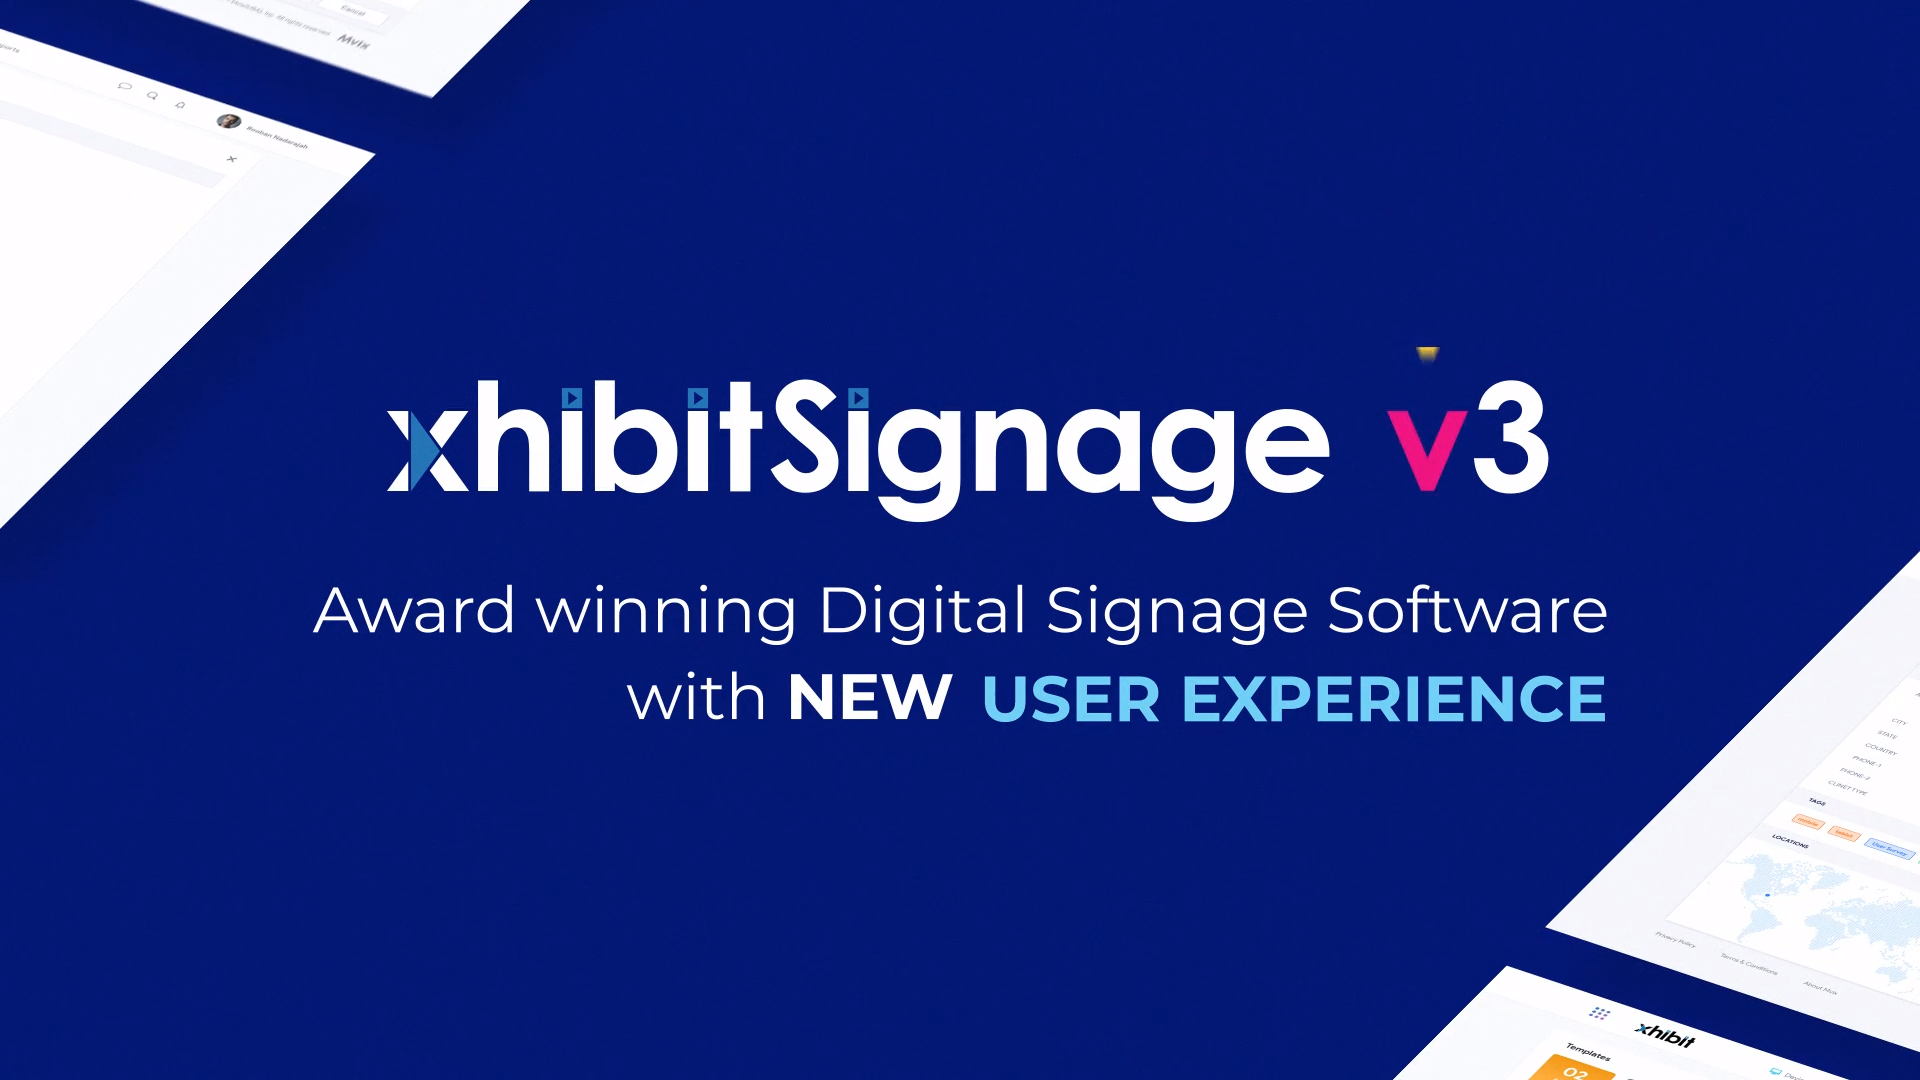 Introducing XhibitSignage v3